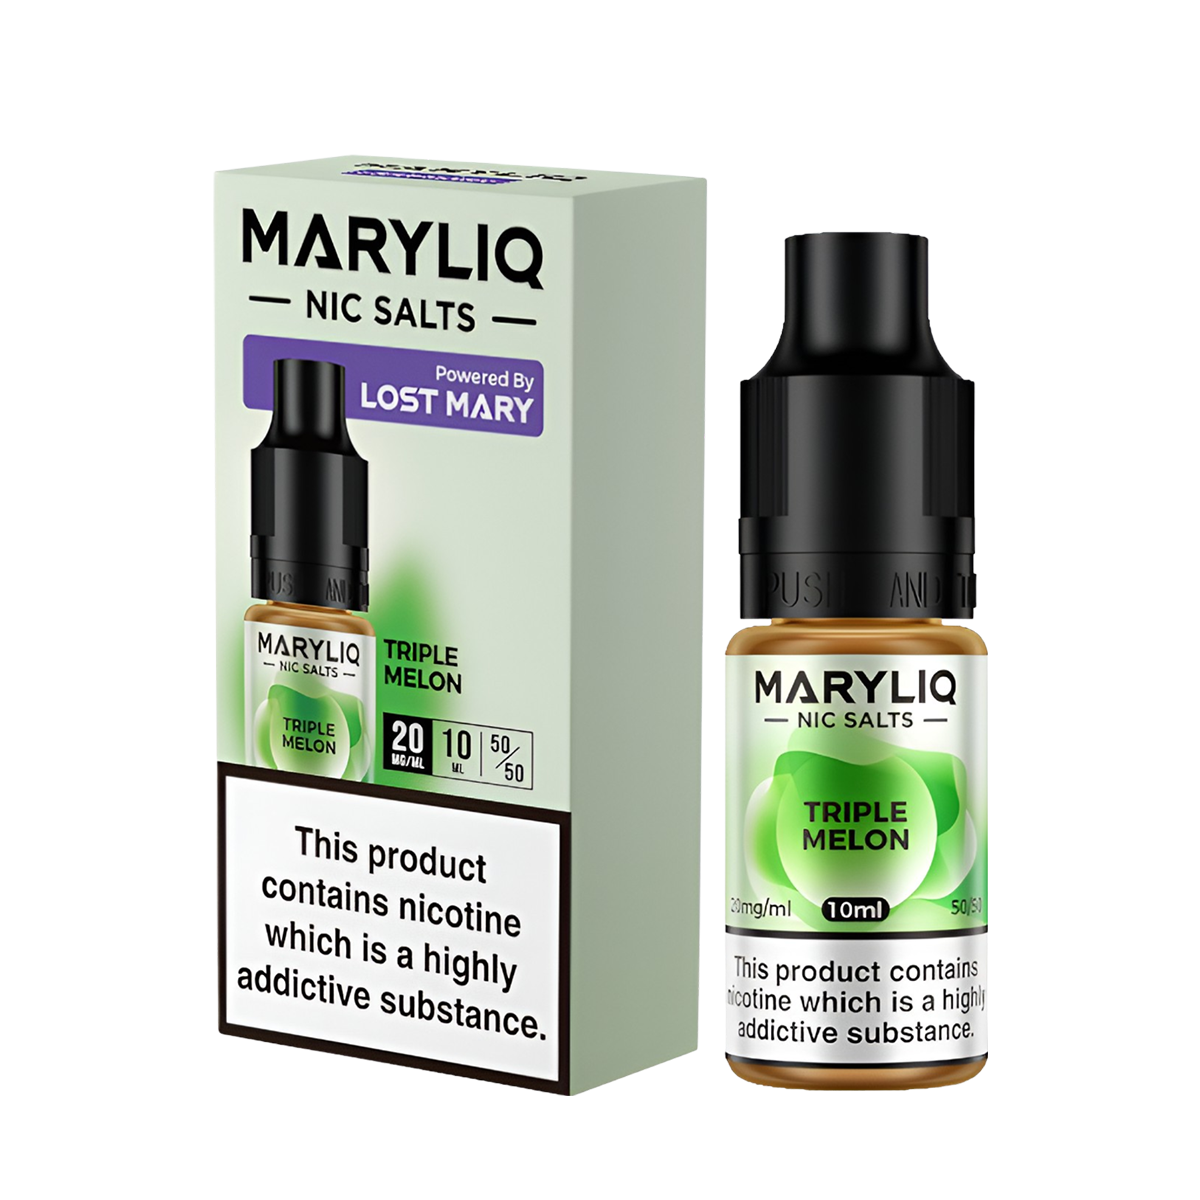 Lost Mary Maryliq Salt Nicotine Vape Juice 20 Mg 10 Ml Triple Melon